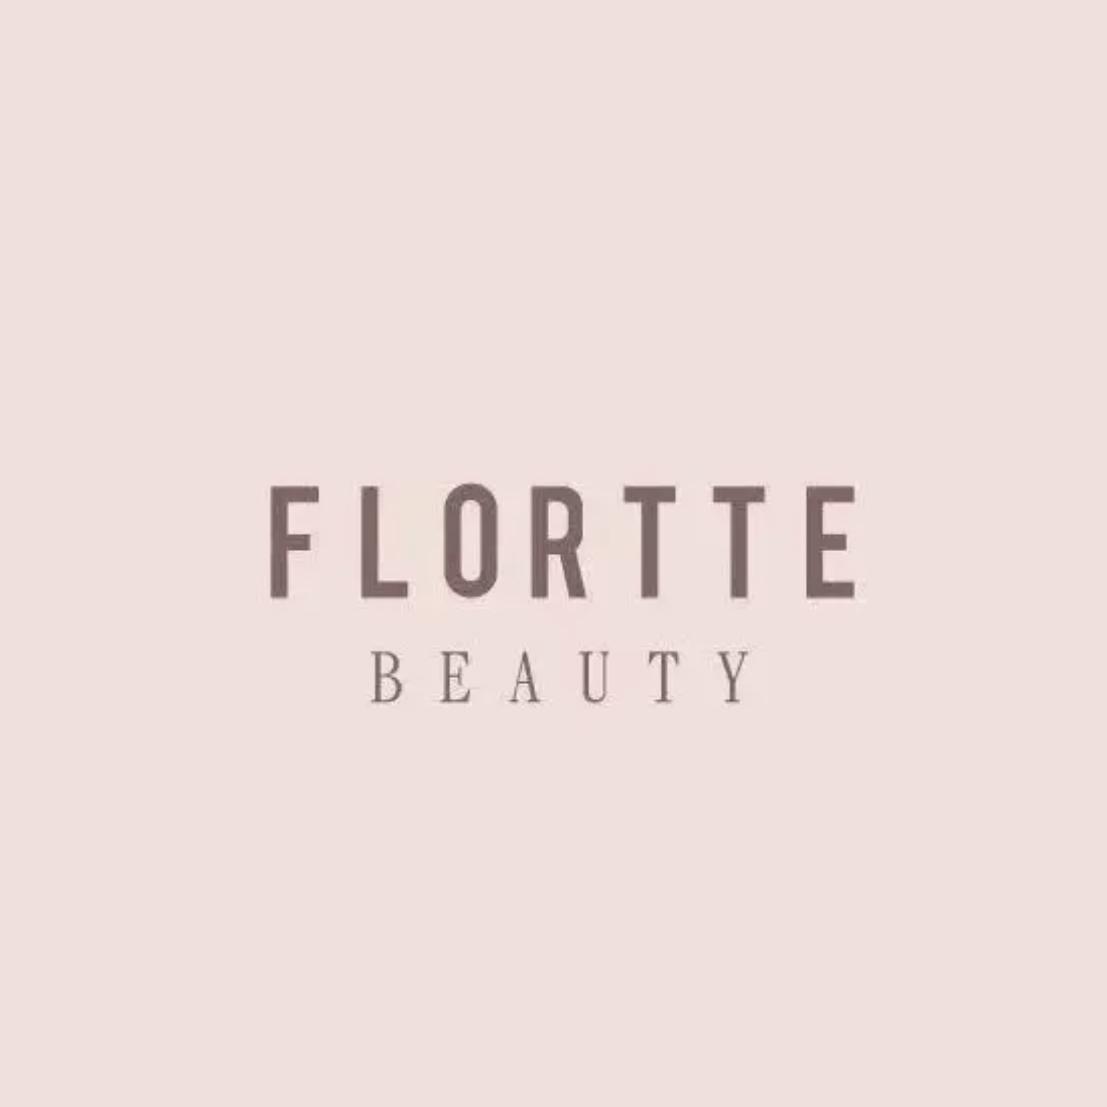 Flortte Beauty